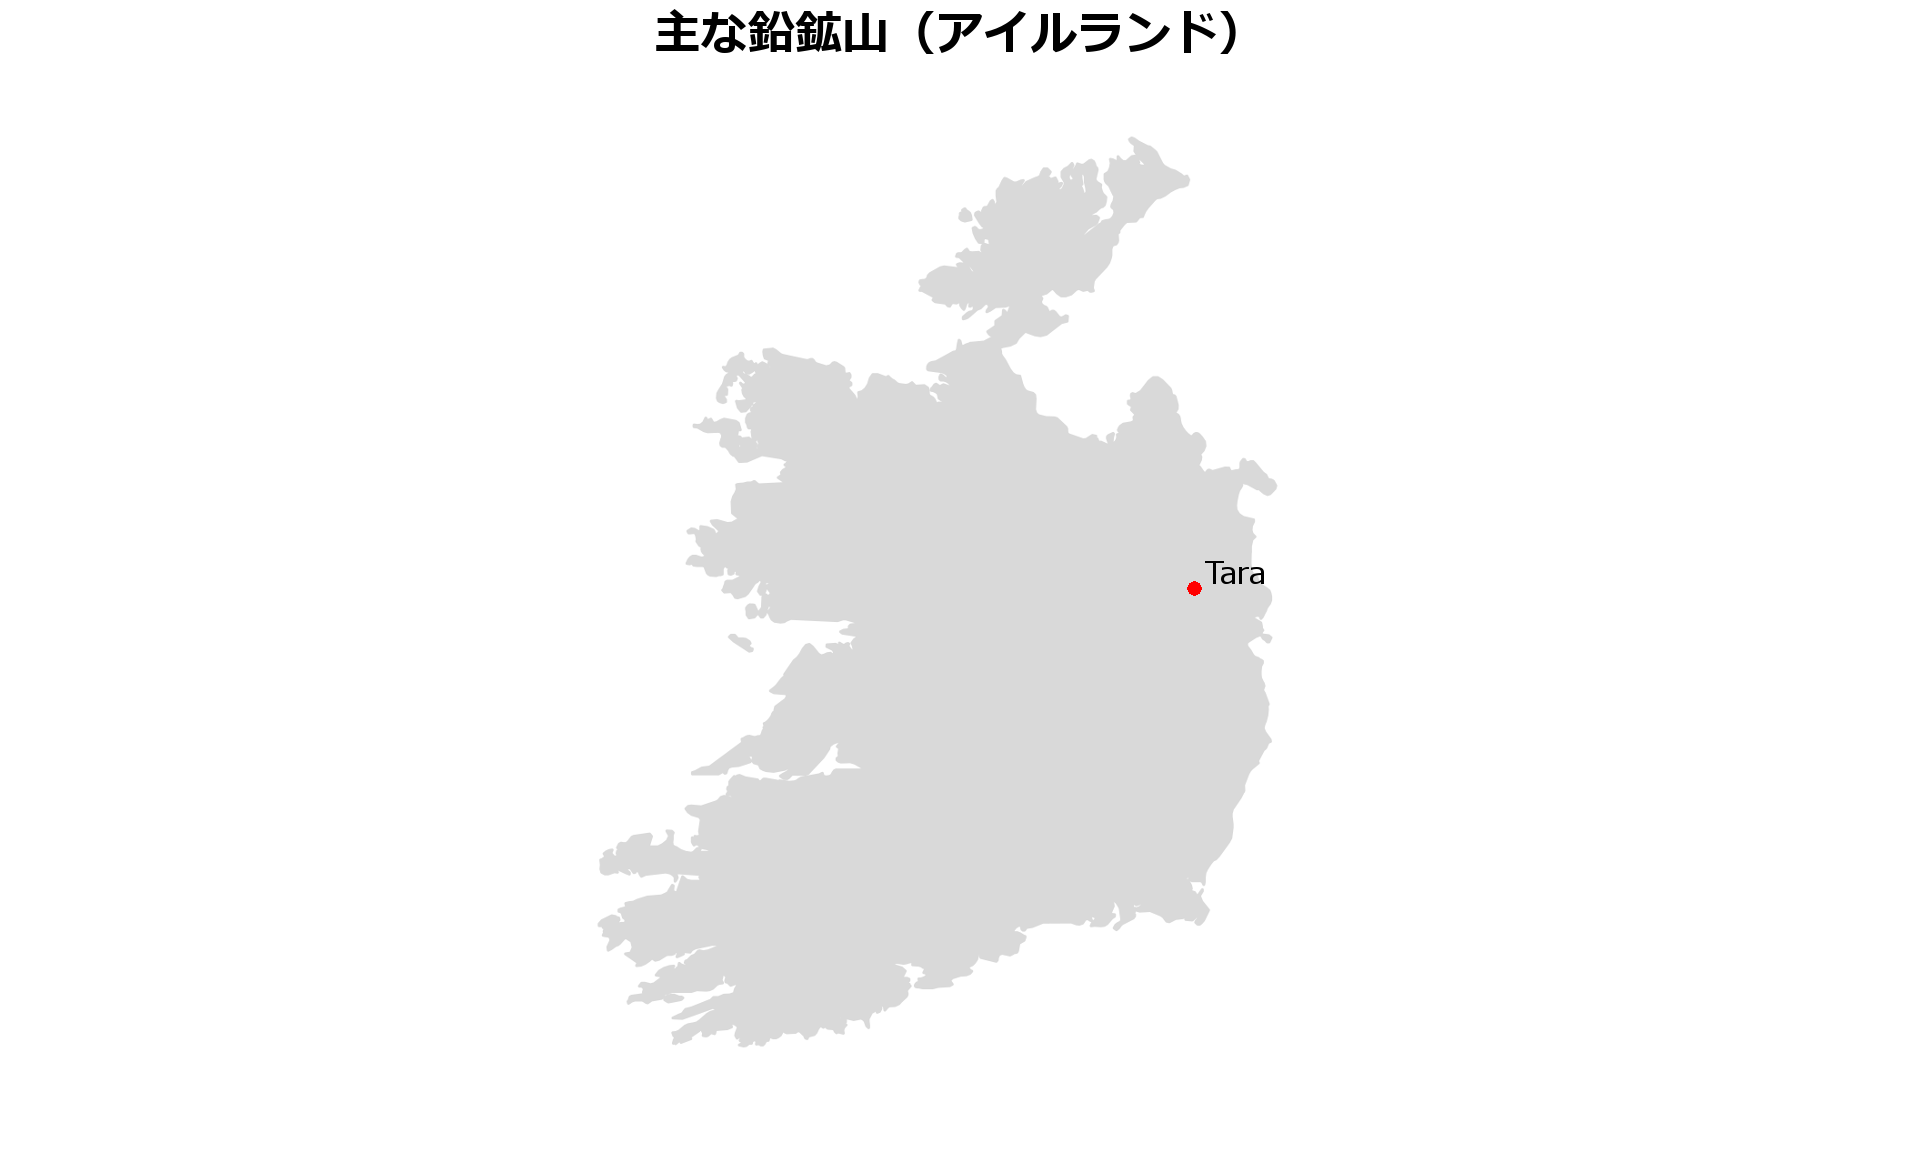 アイルランド鉛鉱山地図